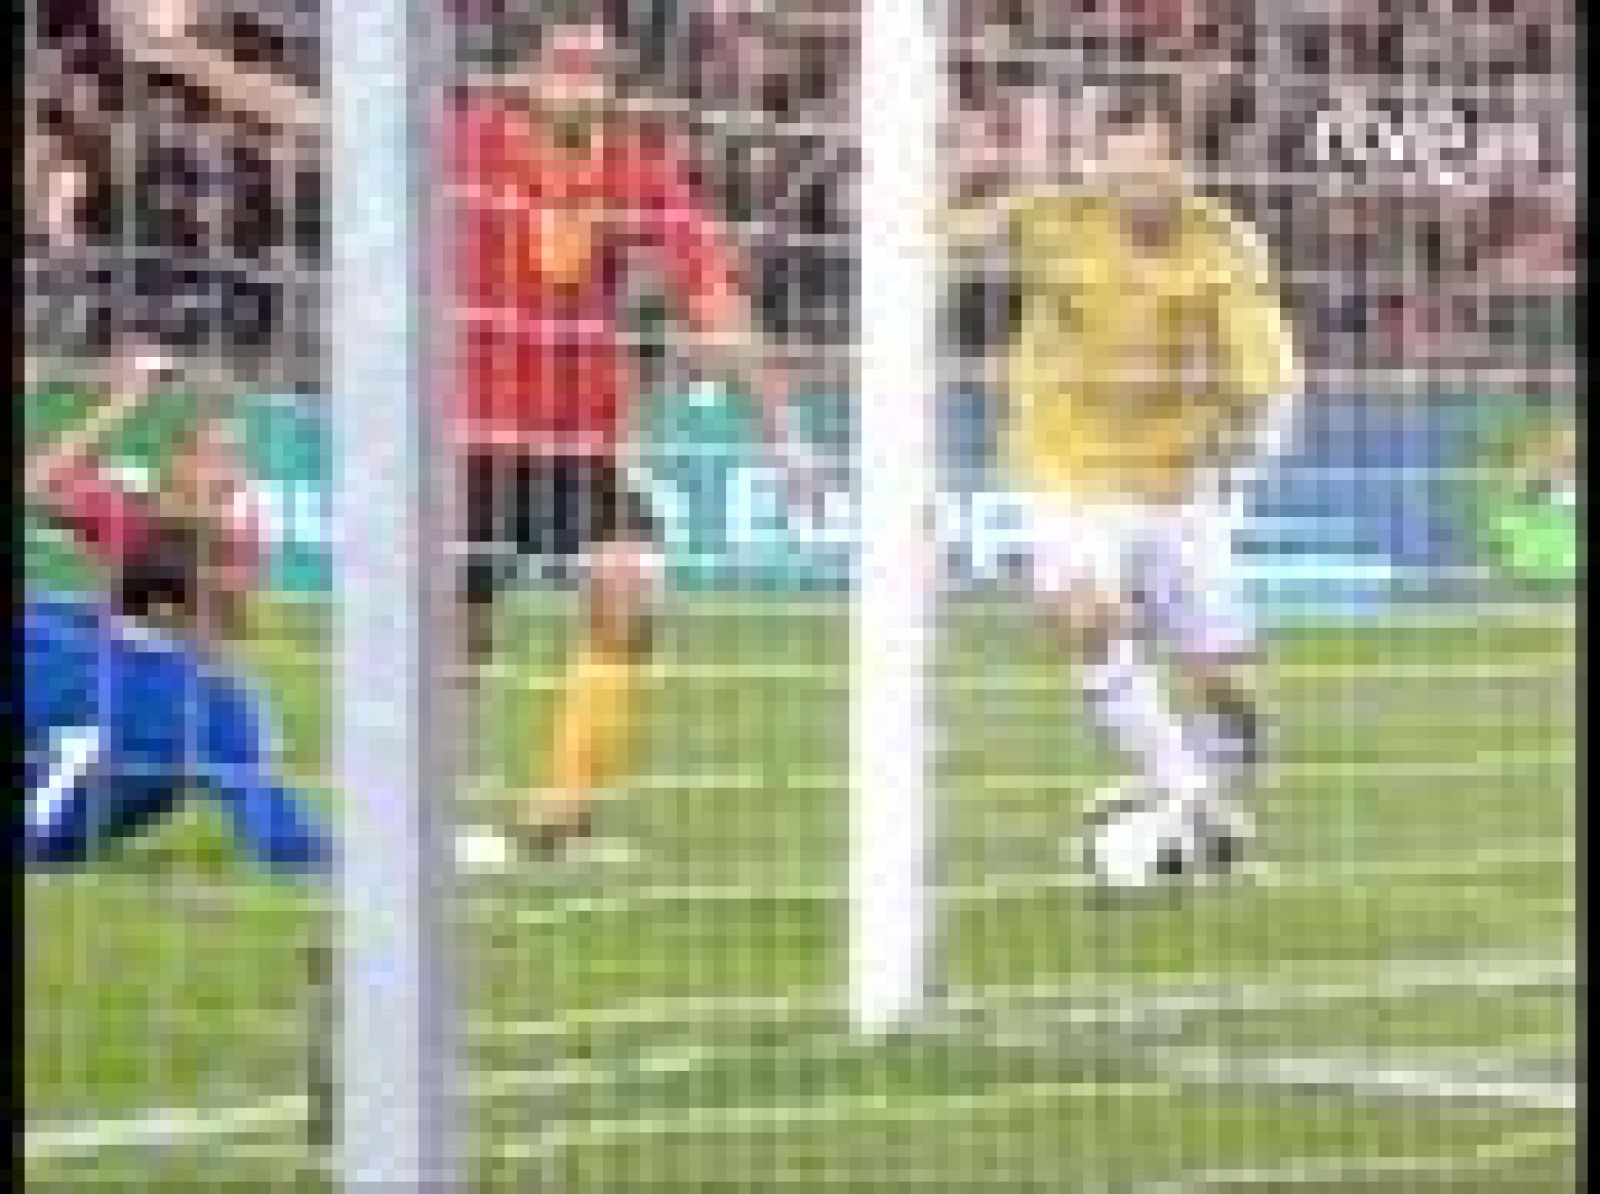  Los de Vicente del Bosque remontan el partido ante Bélgica y ganan por 1-2, gracias a los goles de Iniesta y Villa.